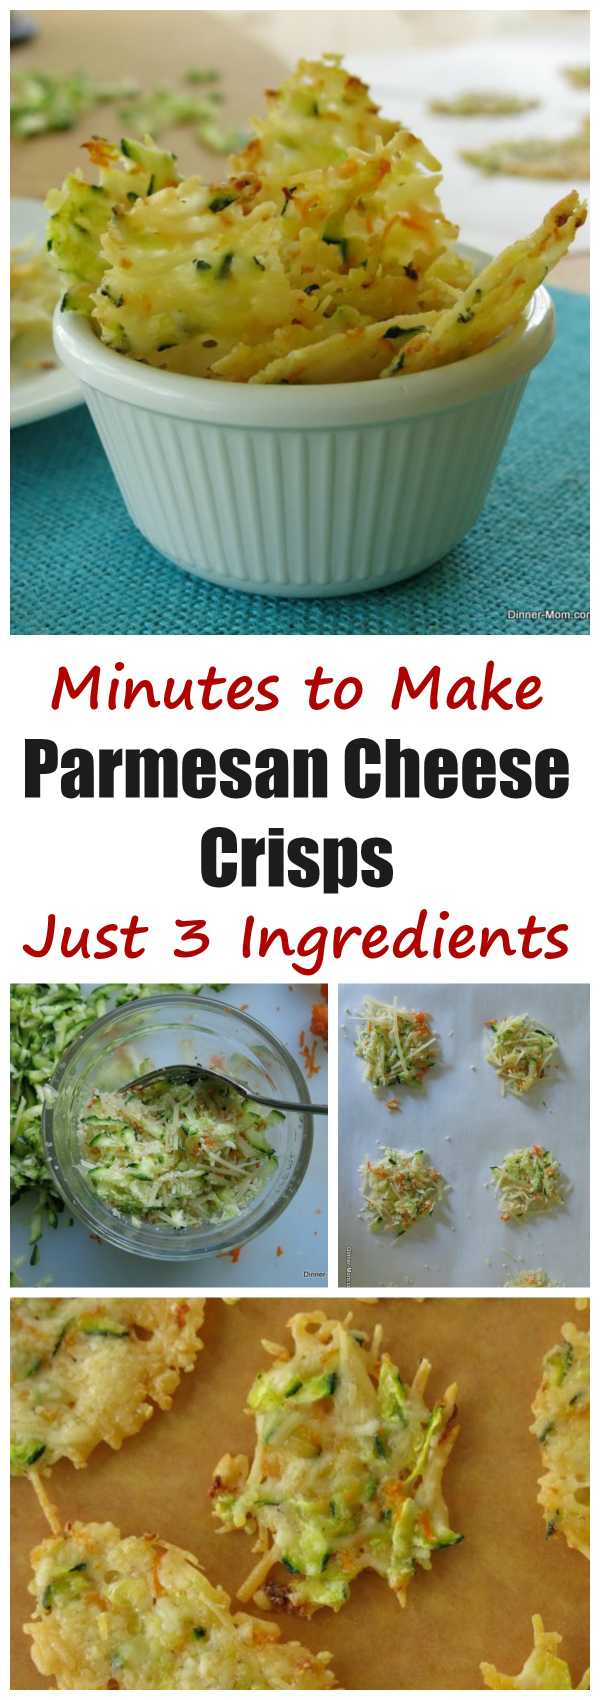 3 Ingredient Parmesan Cheese Crisps